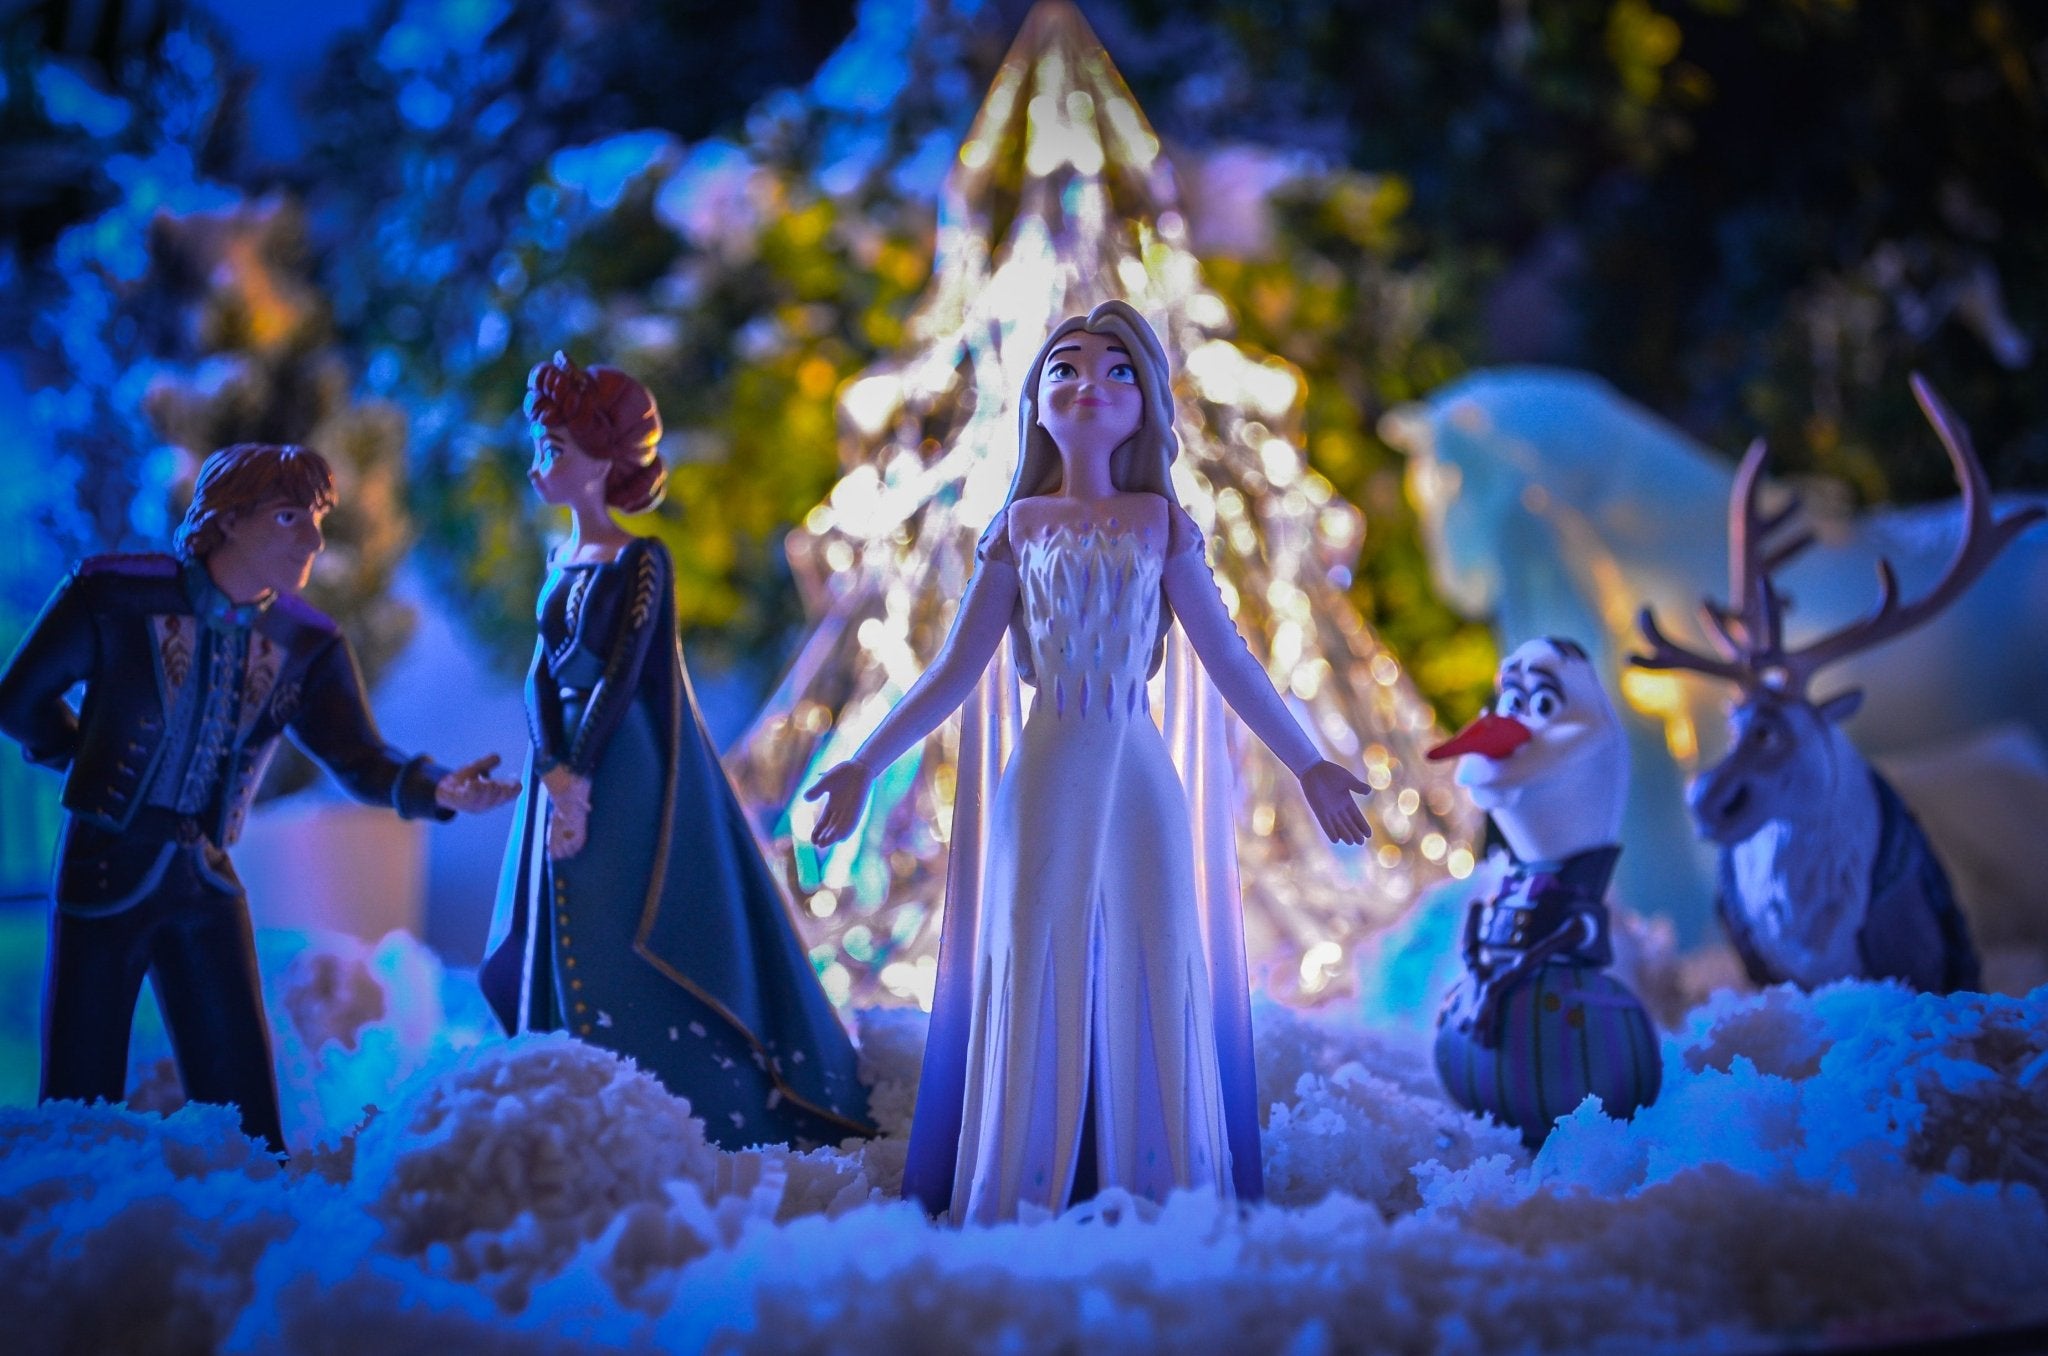 Fiesta temática de Frozen, ¡consigue una decoración mágica! - Mis Globos